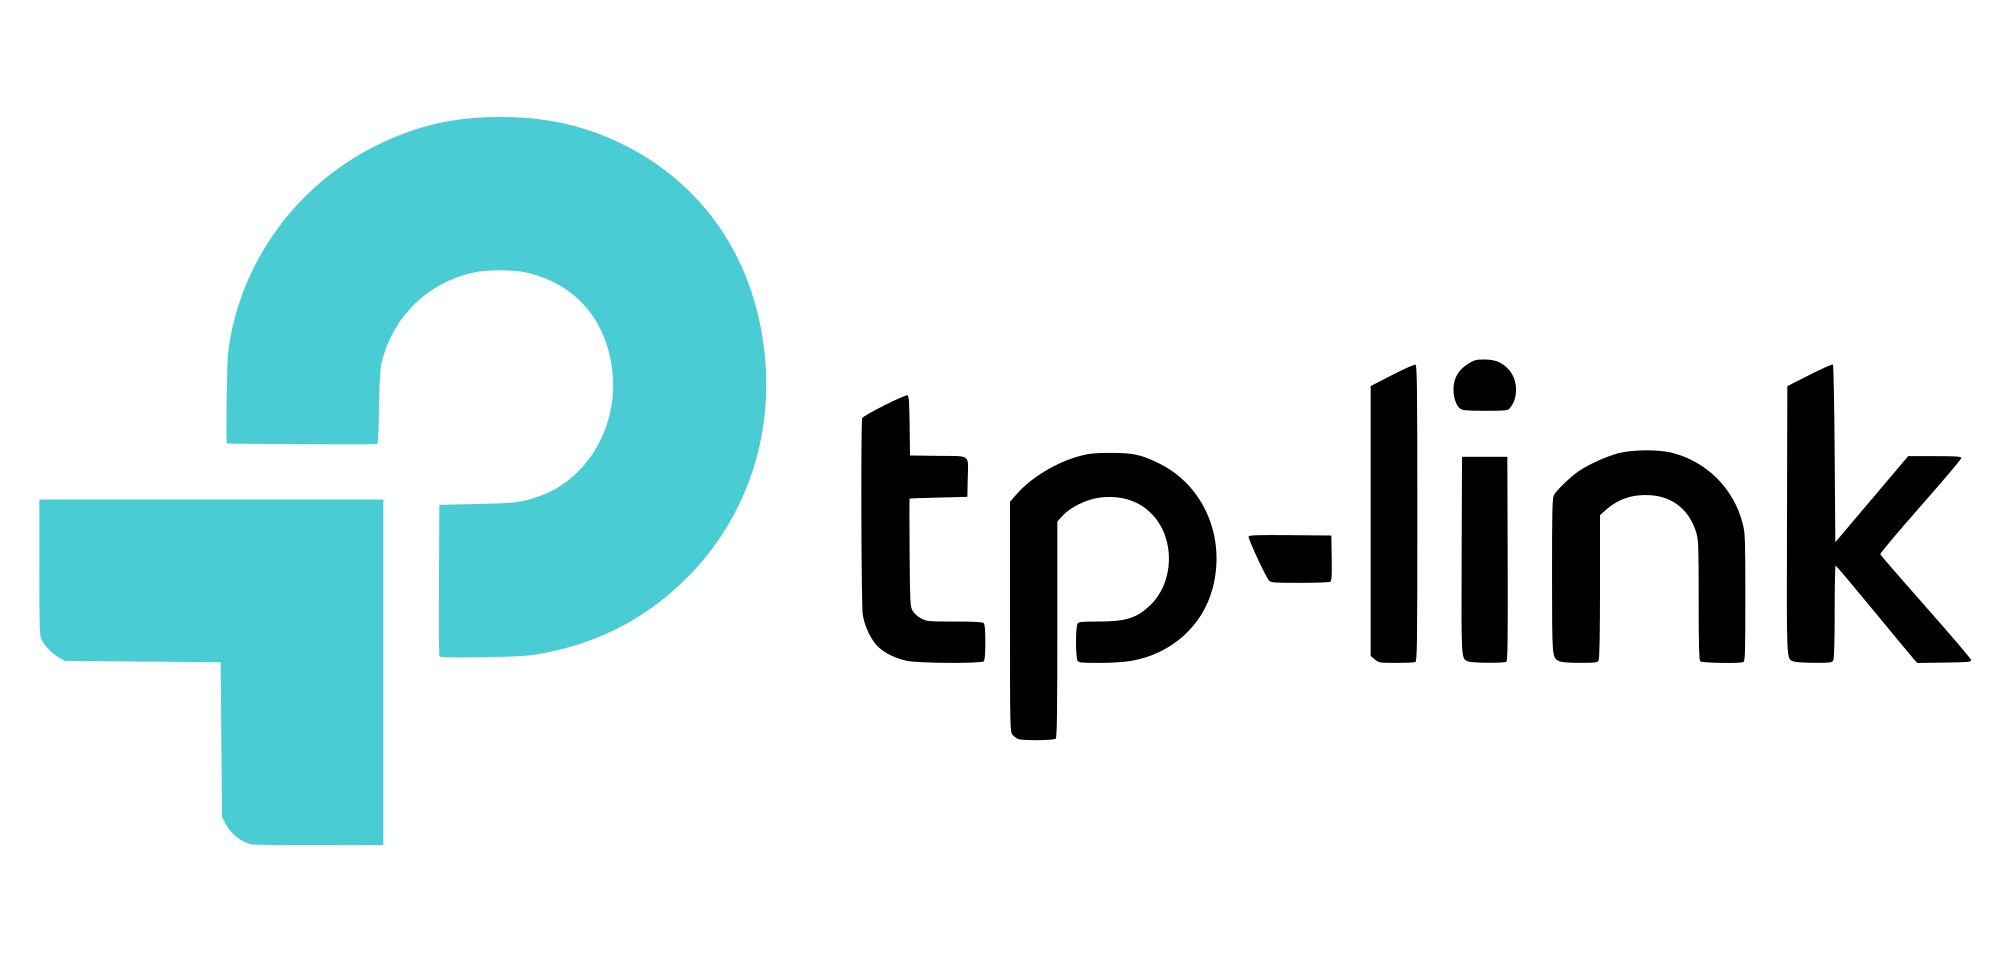 TPLINK_Logo_2.svg